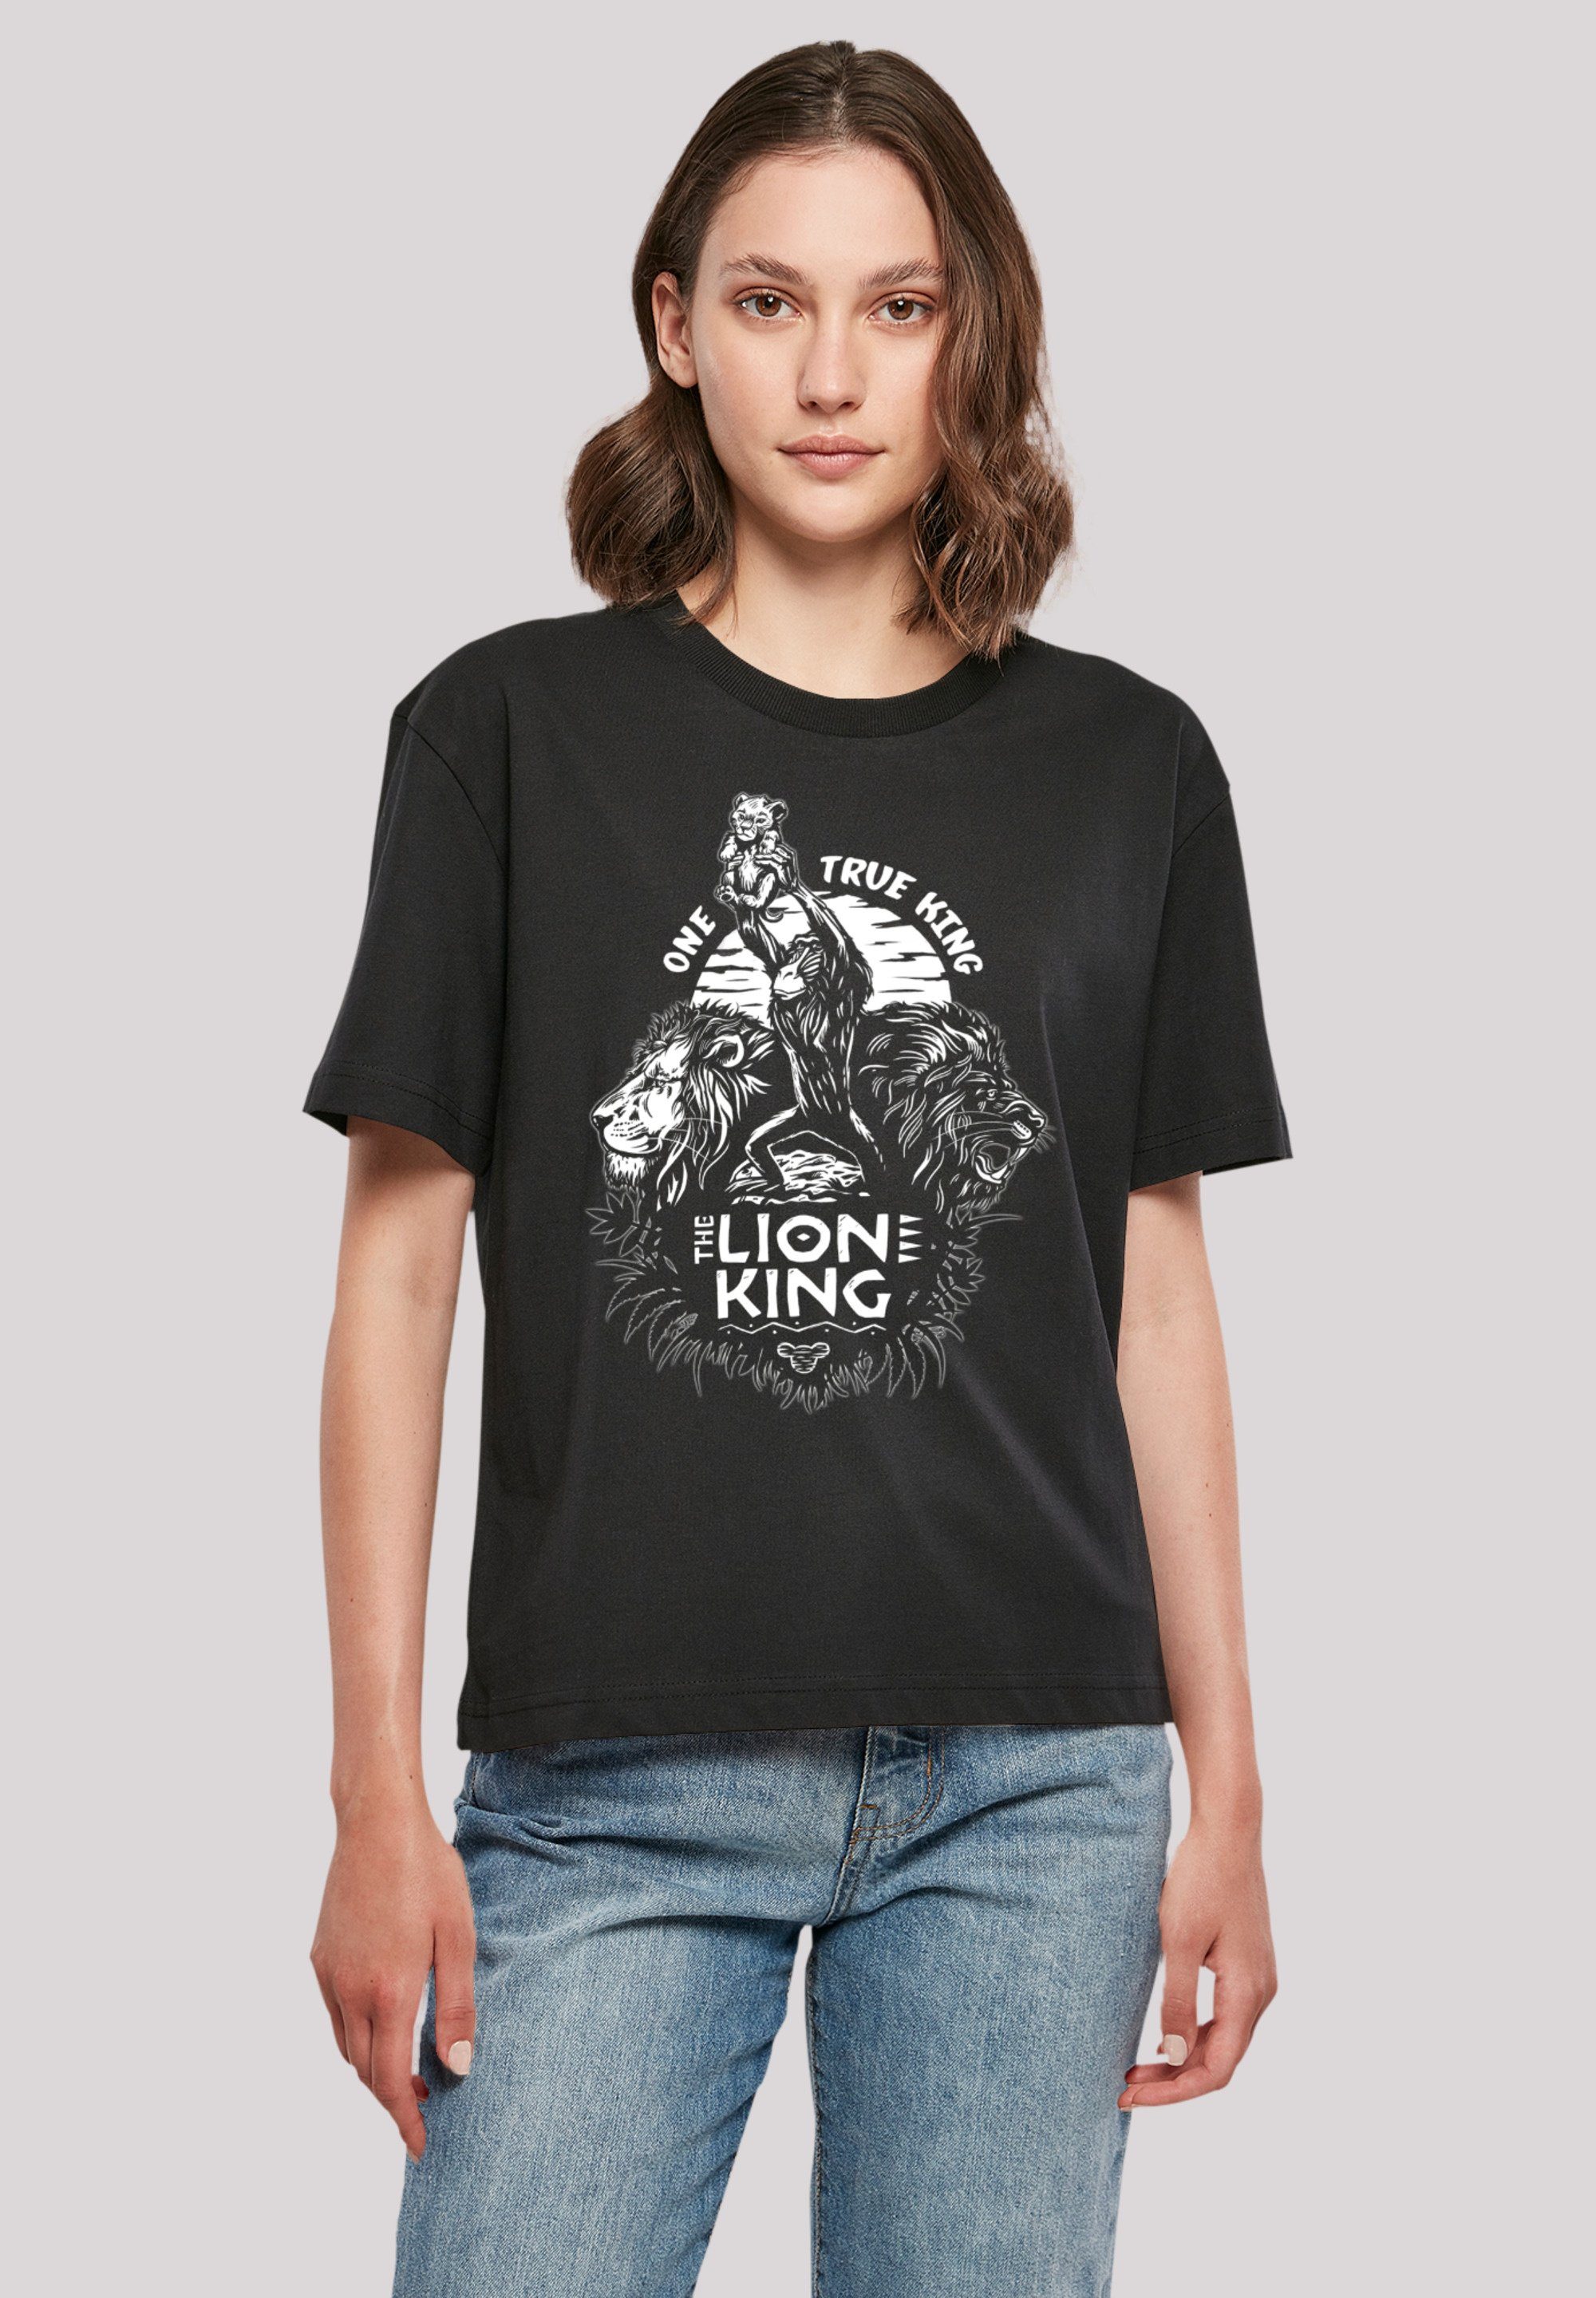 Premium True und One F4NT4STIC der Löwen vielseitig kombinierbar Qualität, Disney Komfortabel T-Shirt King König